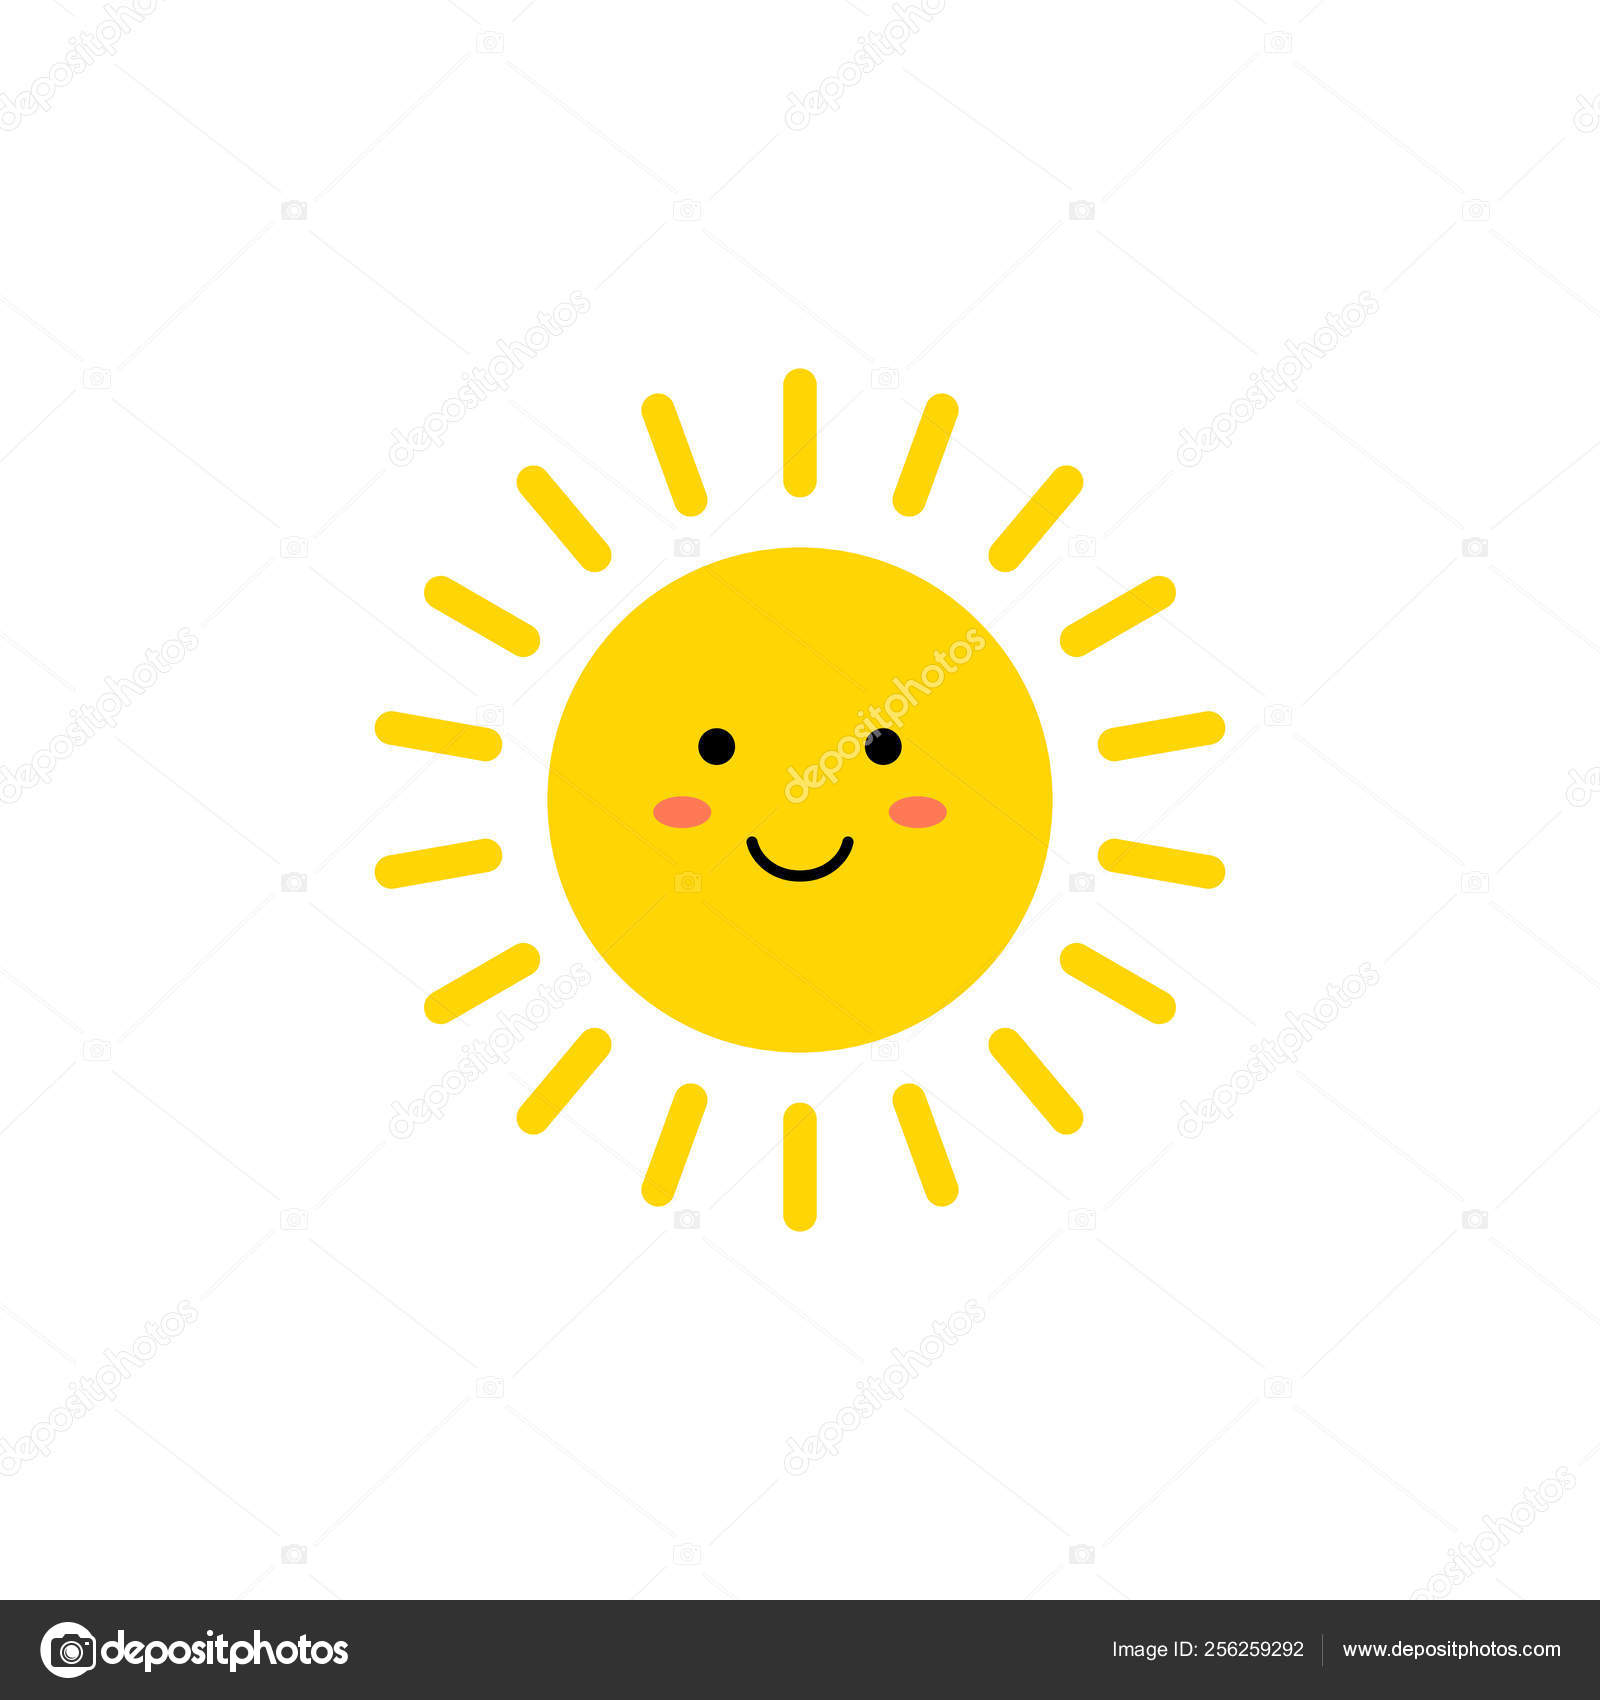 Sun - Vektorsymbol. süße gelbe Sonne mit lächelndem Gesicht. Emojis.  Sommer-Emoticon. Vektorillustration Stock-Vektorgrafik von ©Chereliss  256259292